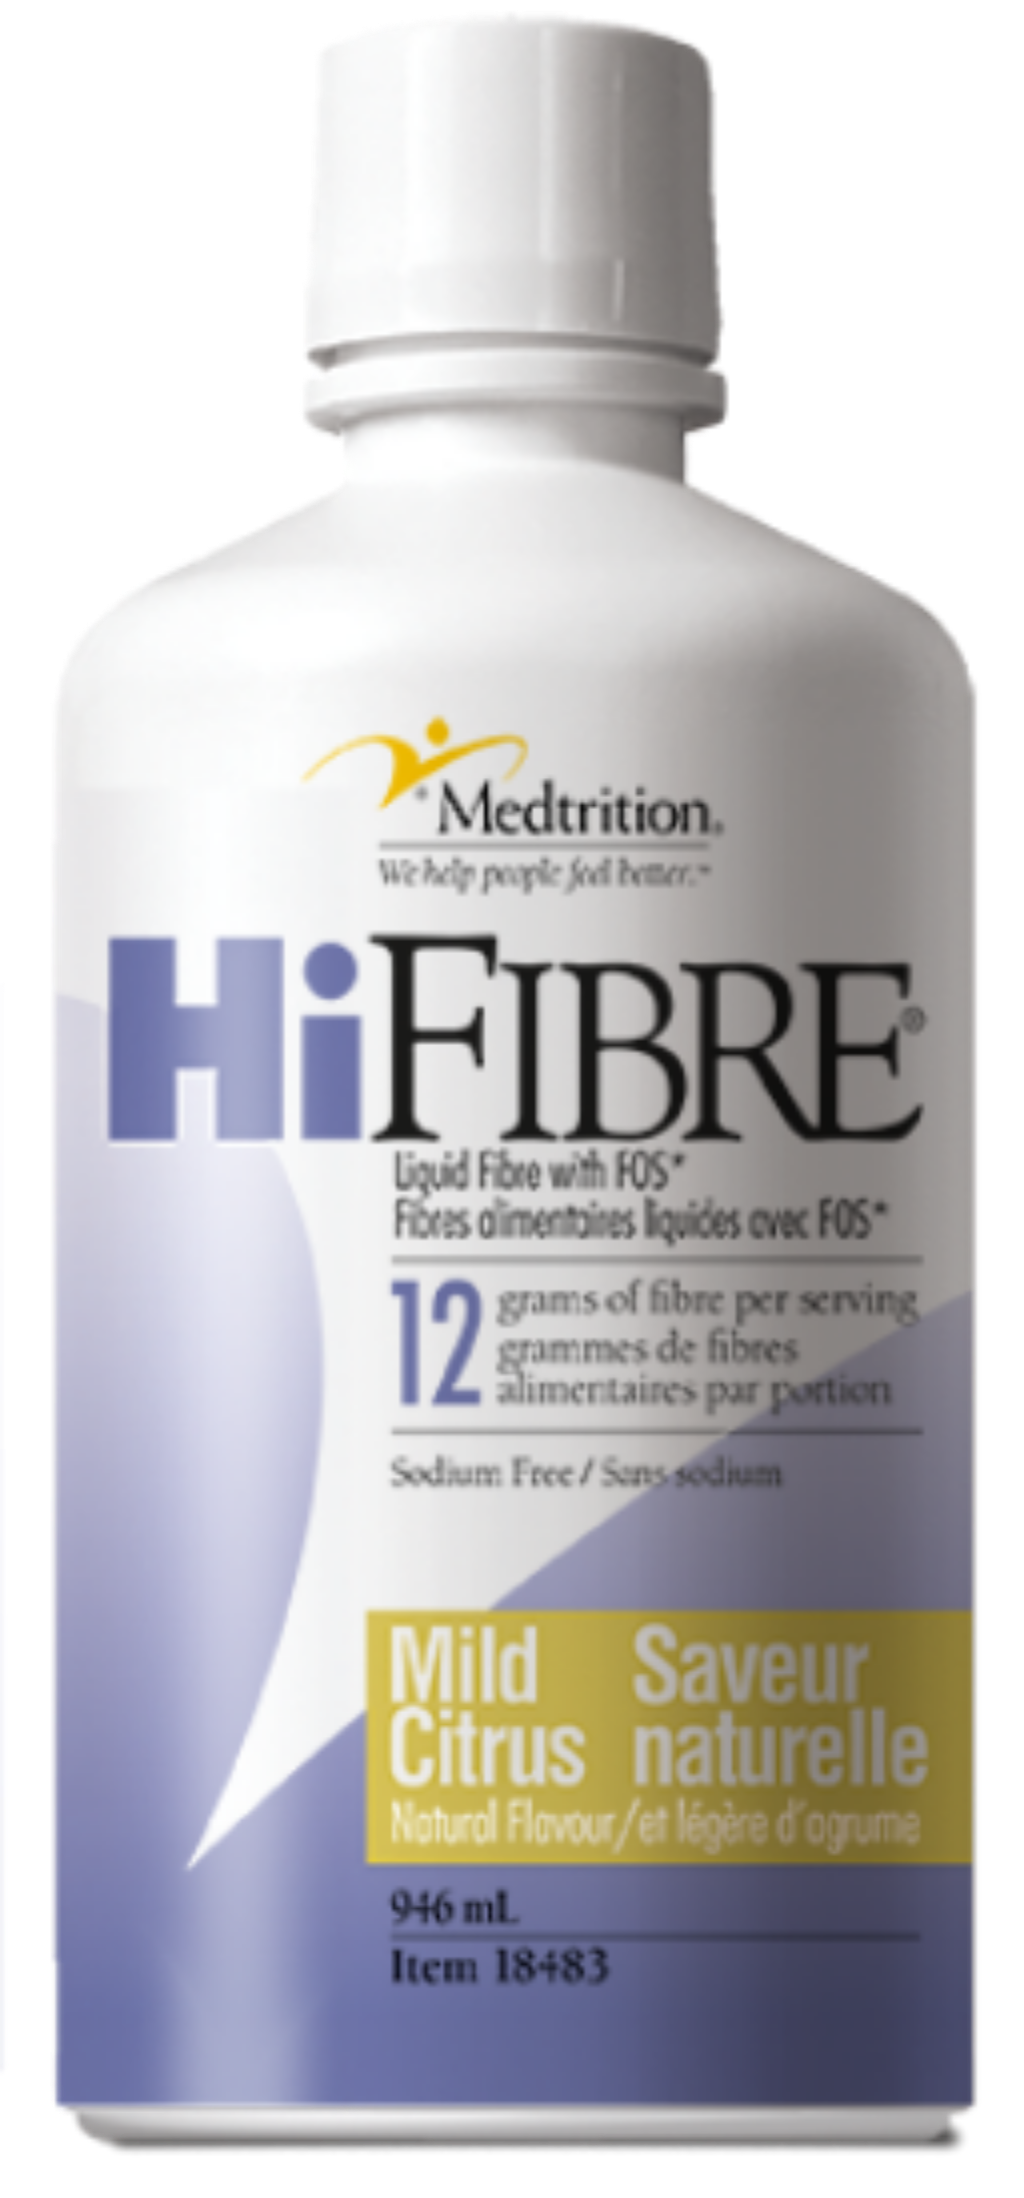 HiFIBRE - Liquid Fibre (946ml Bottle)